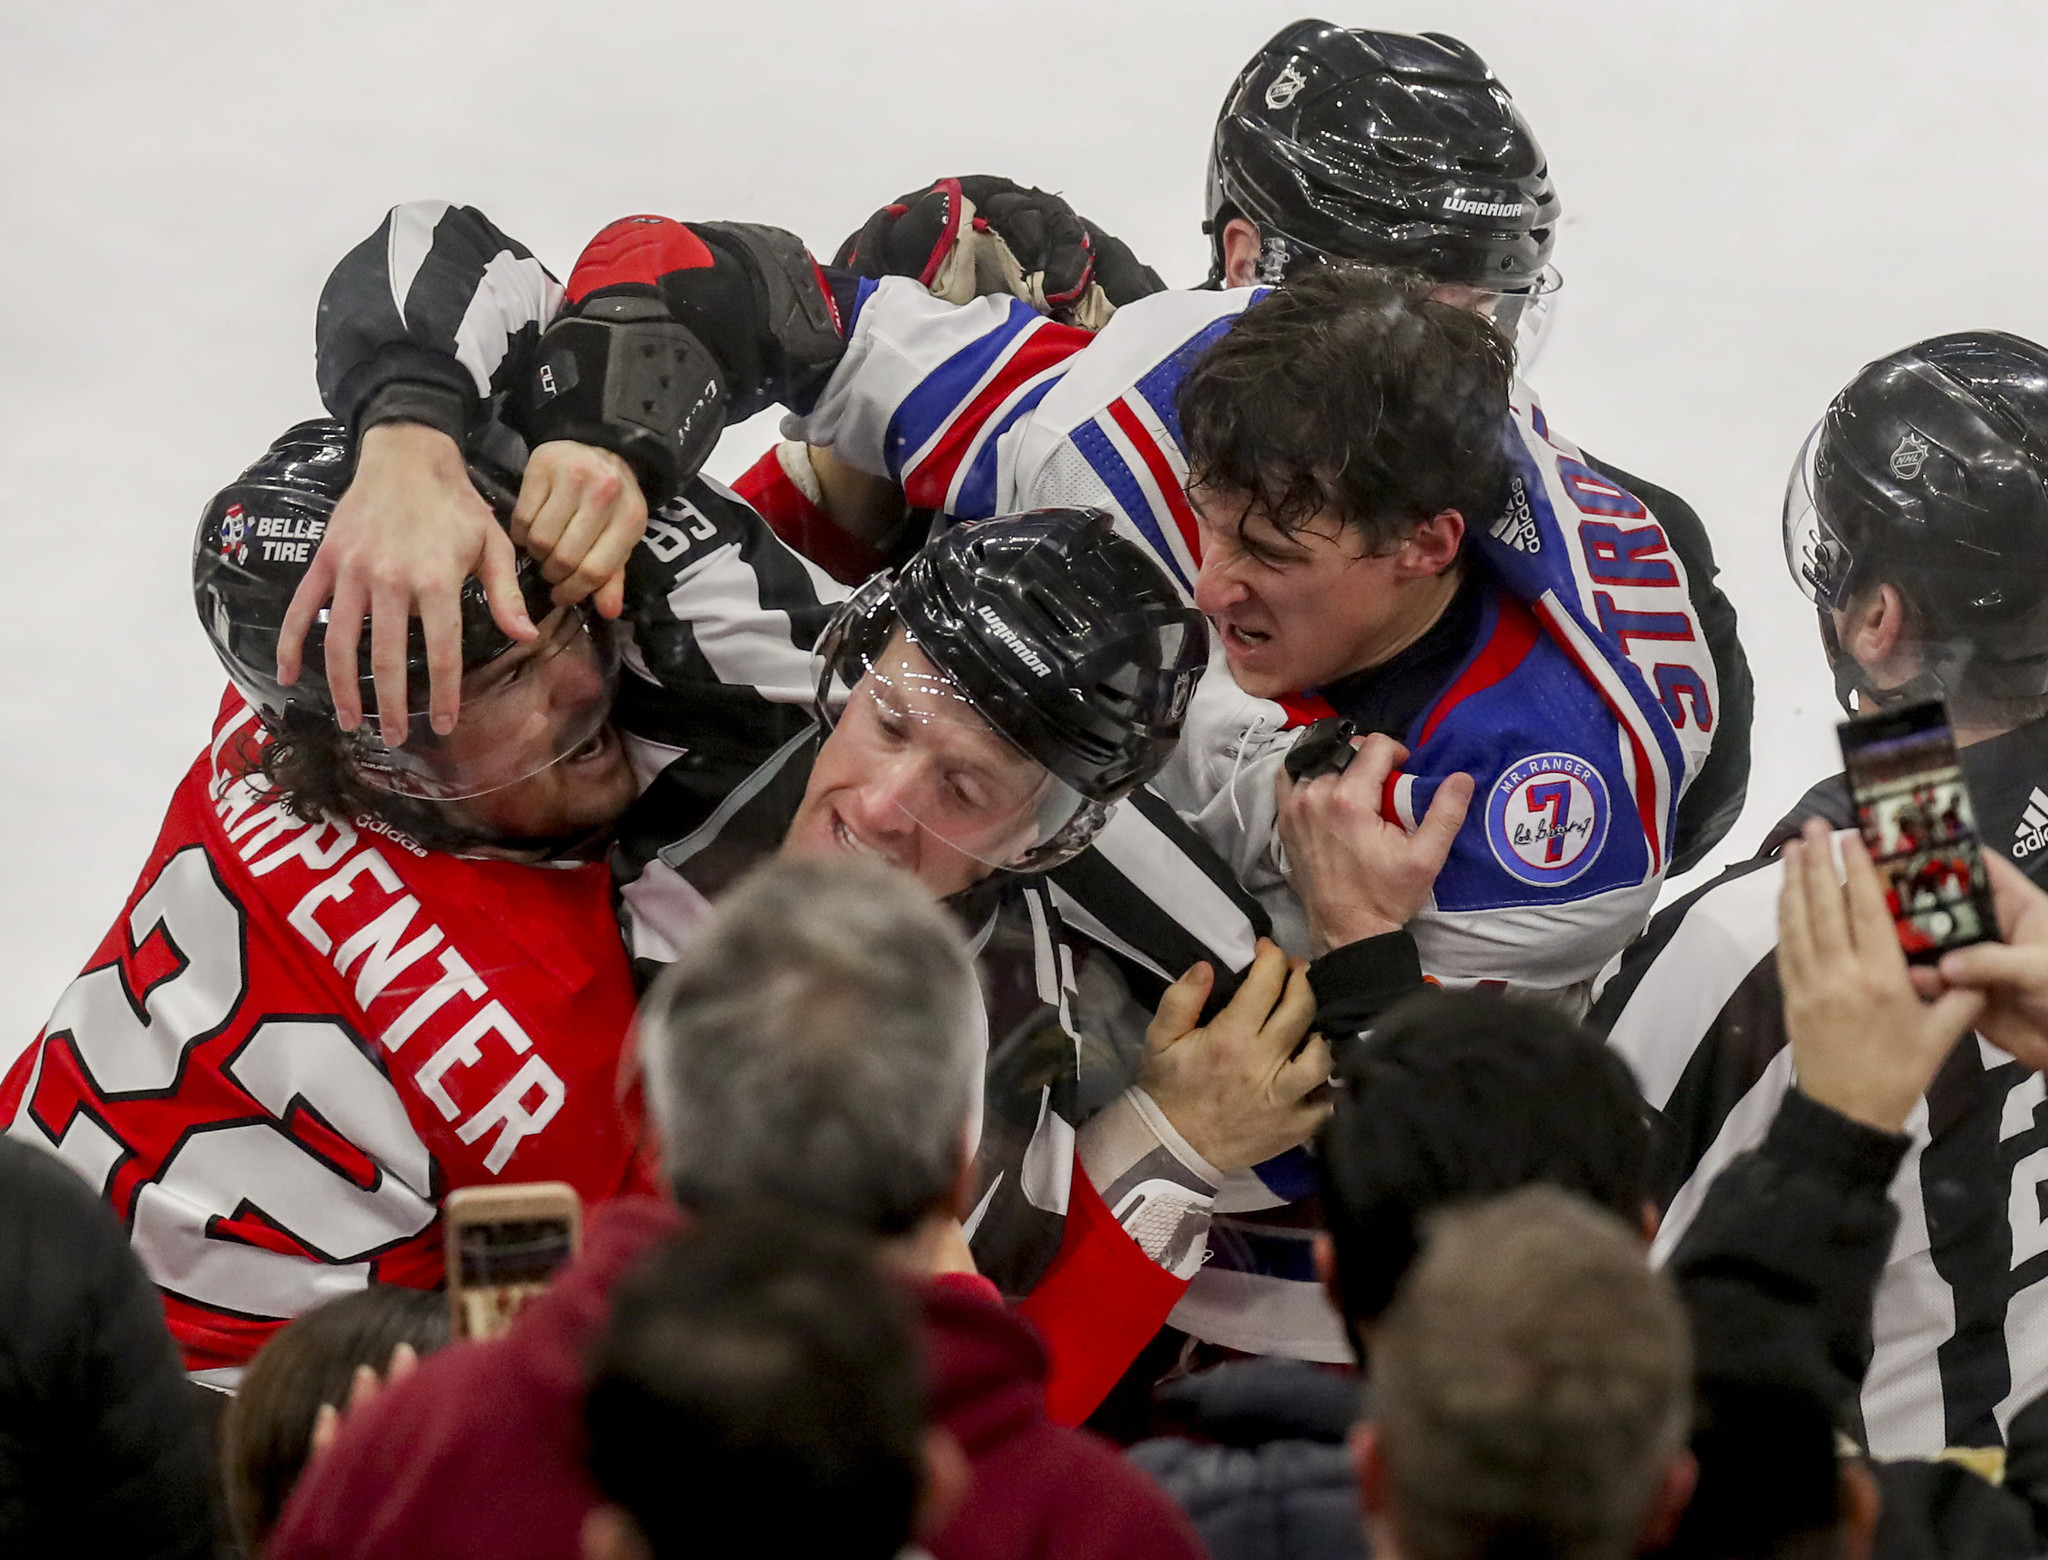 Would bringing back NHL's brawling enforcers make hockey safer?, NHL